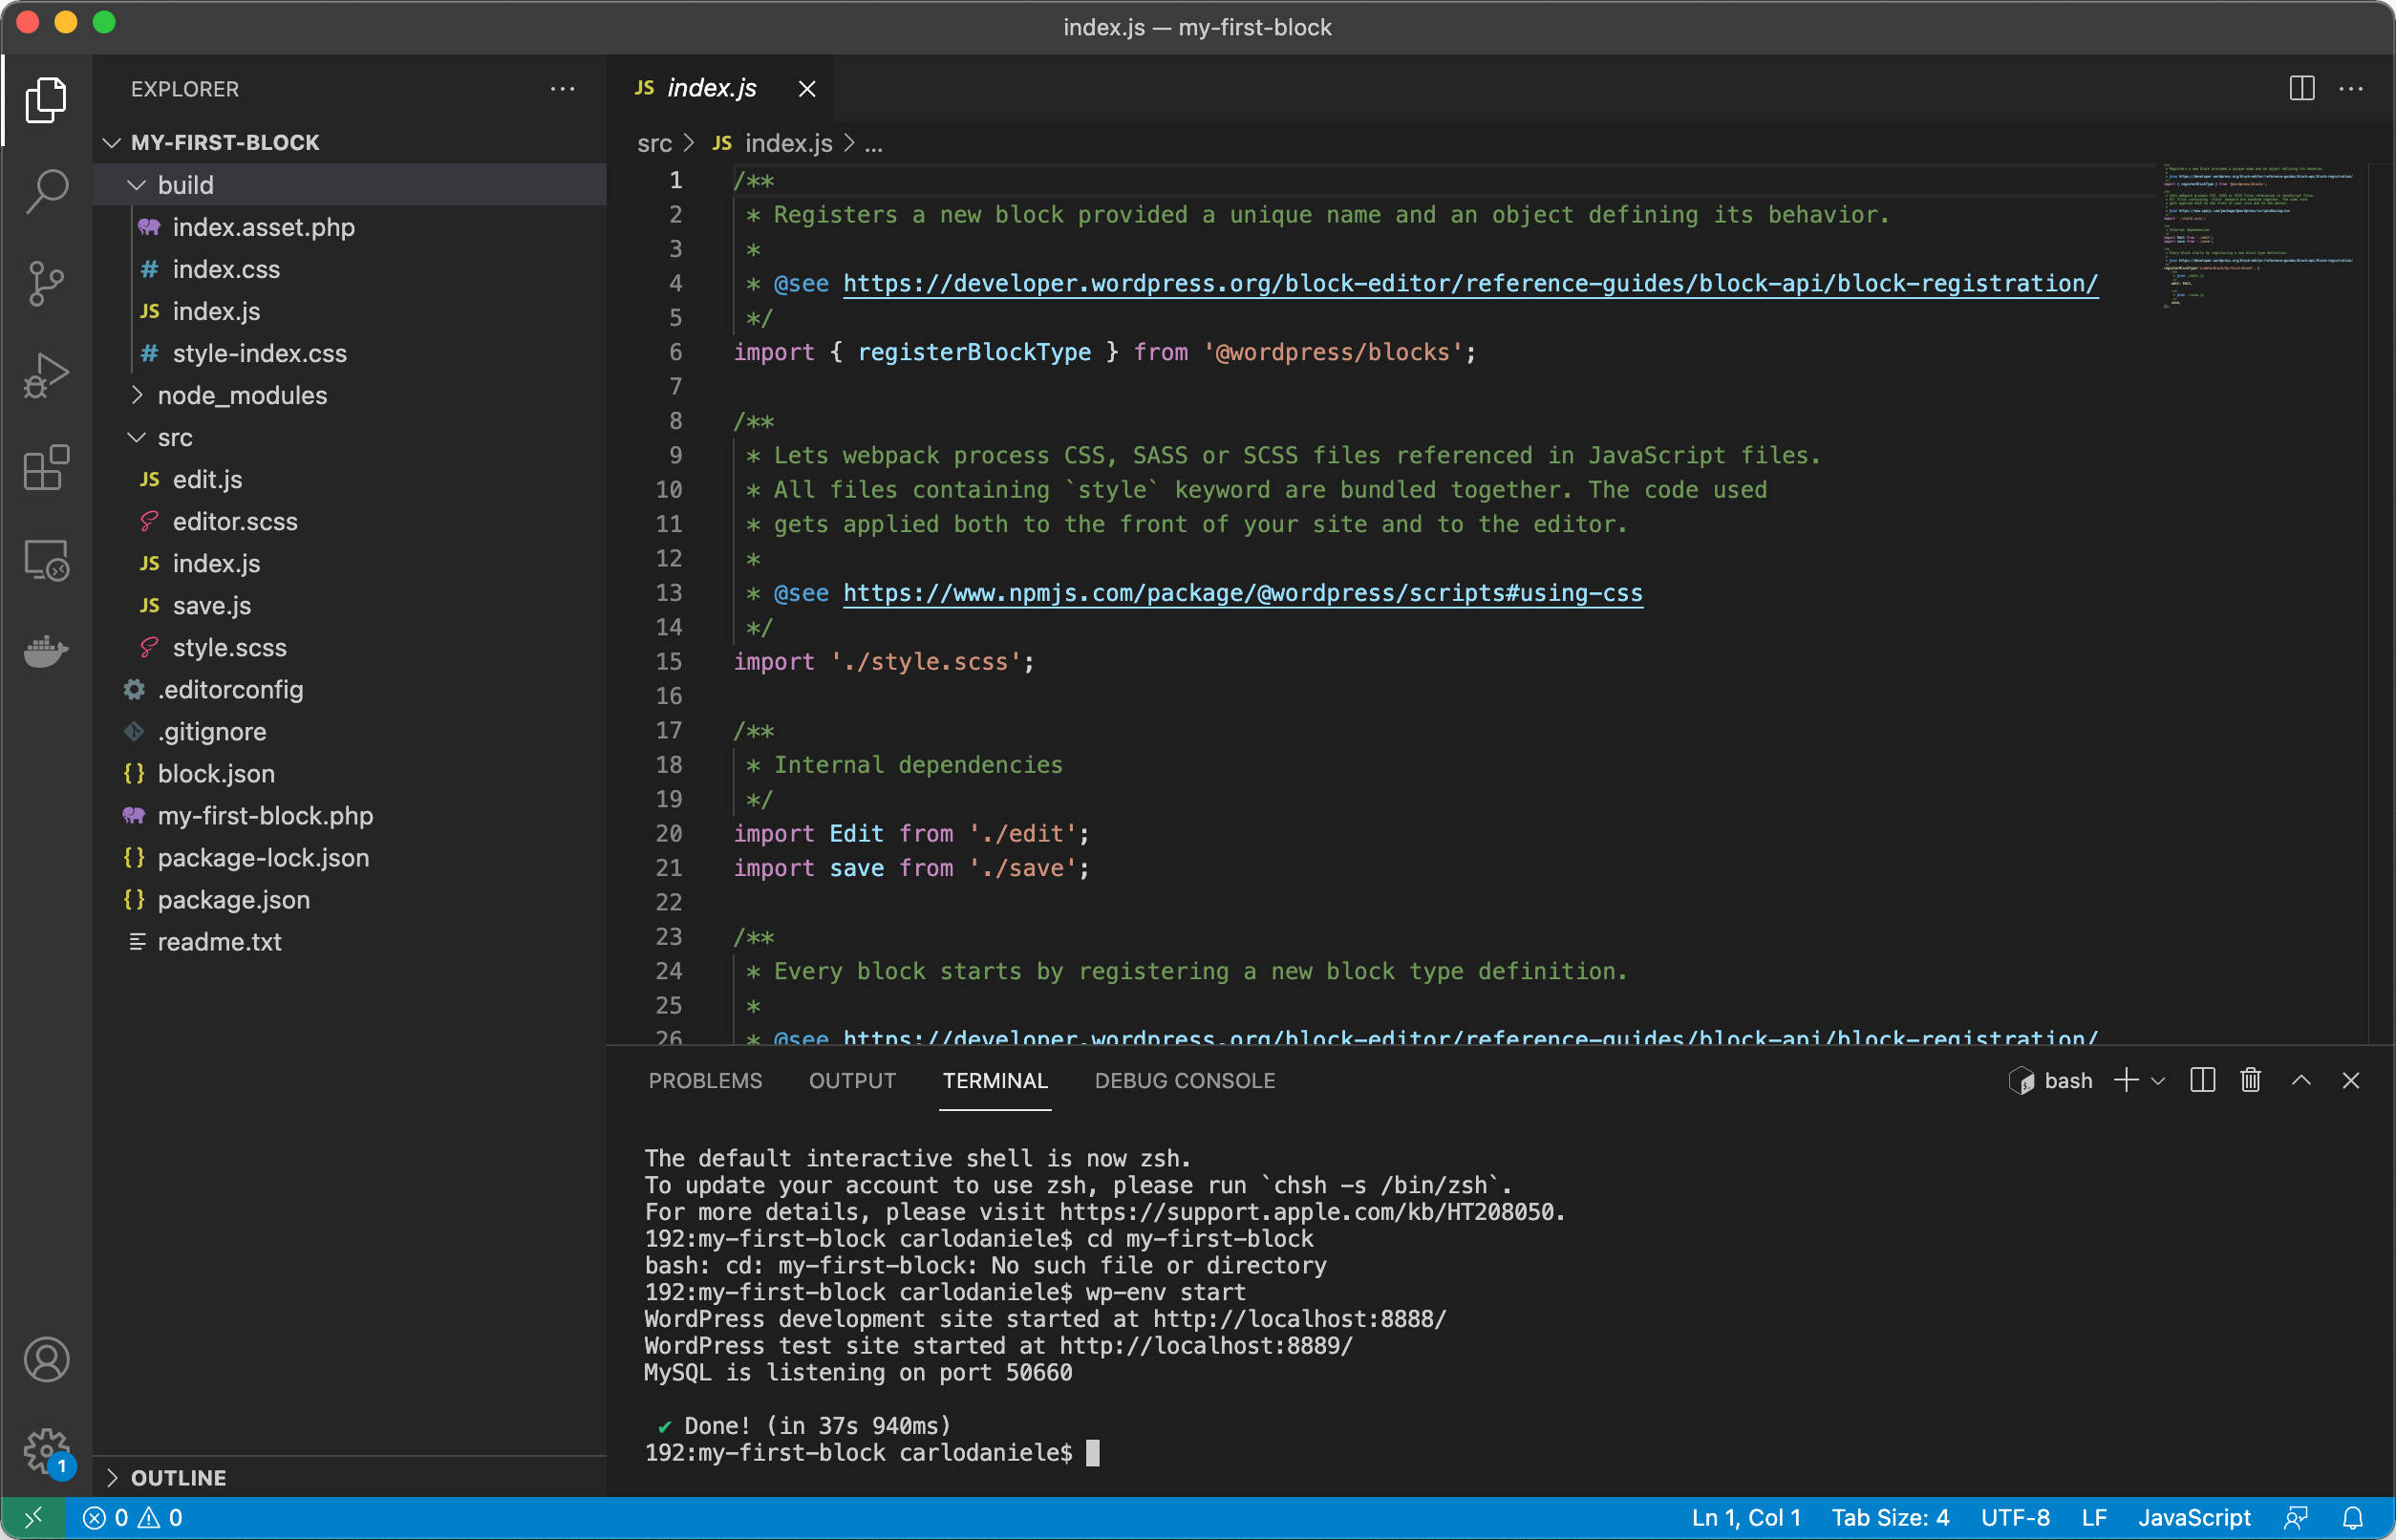 Ejecución de comandos desde el terminal de código de Visual Studio.